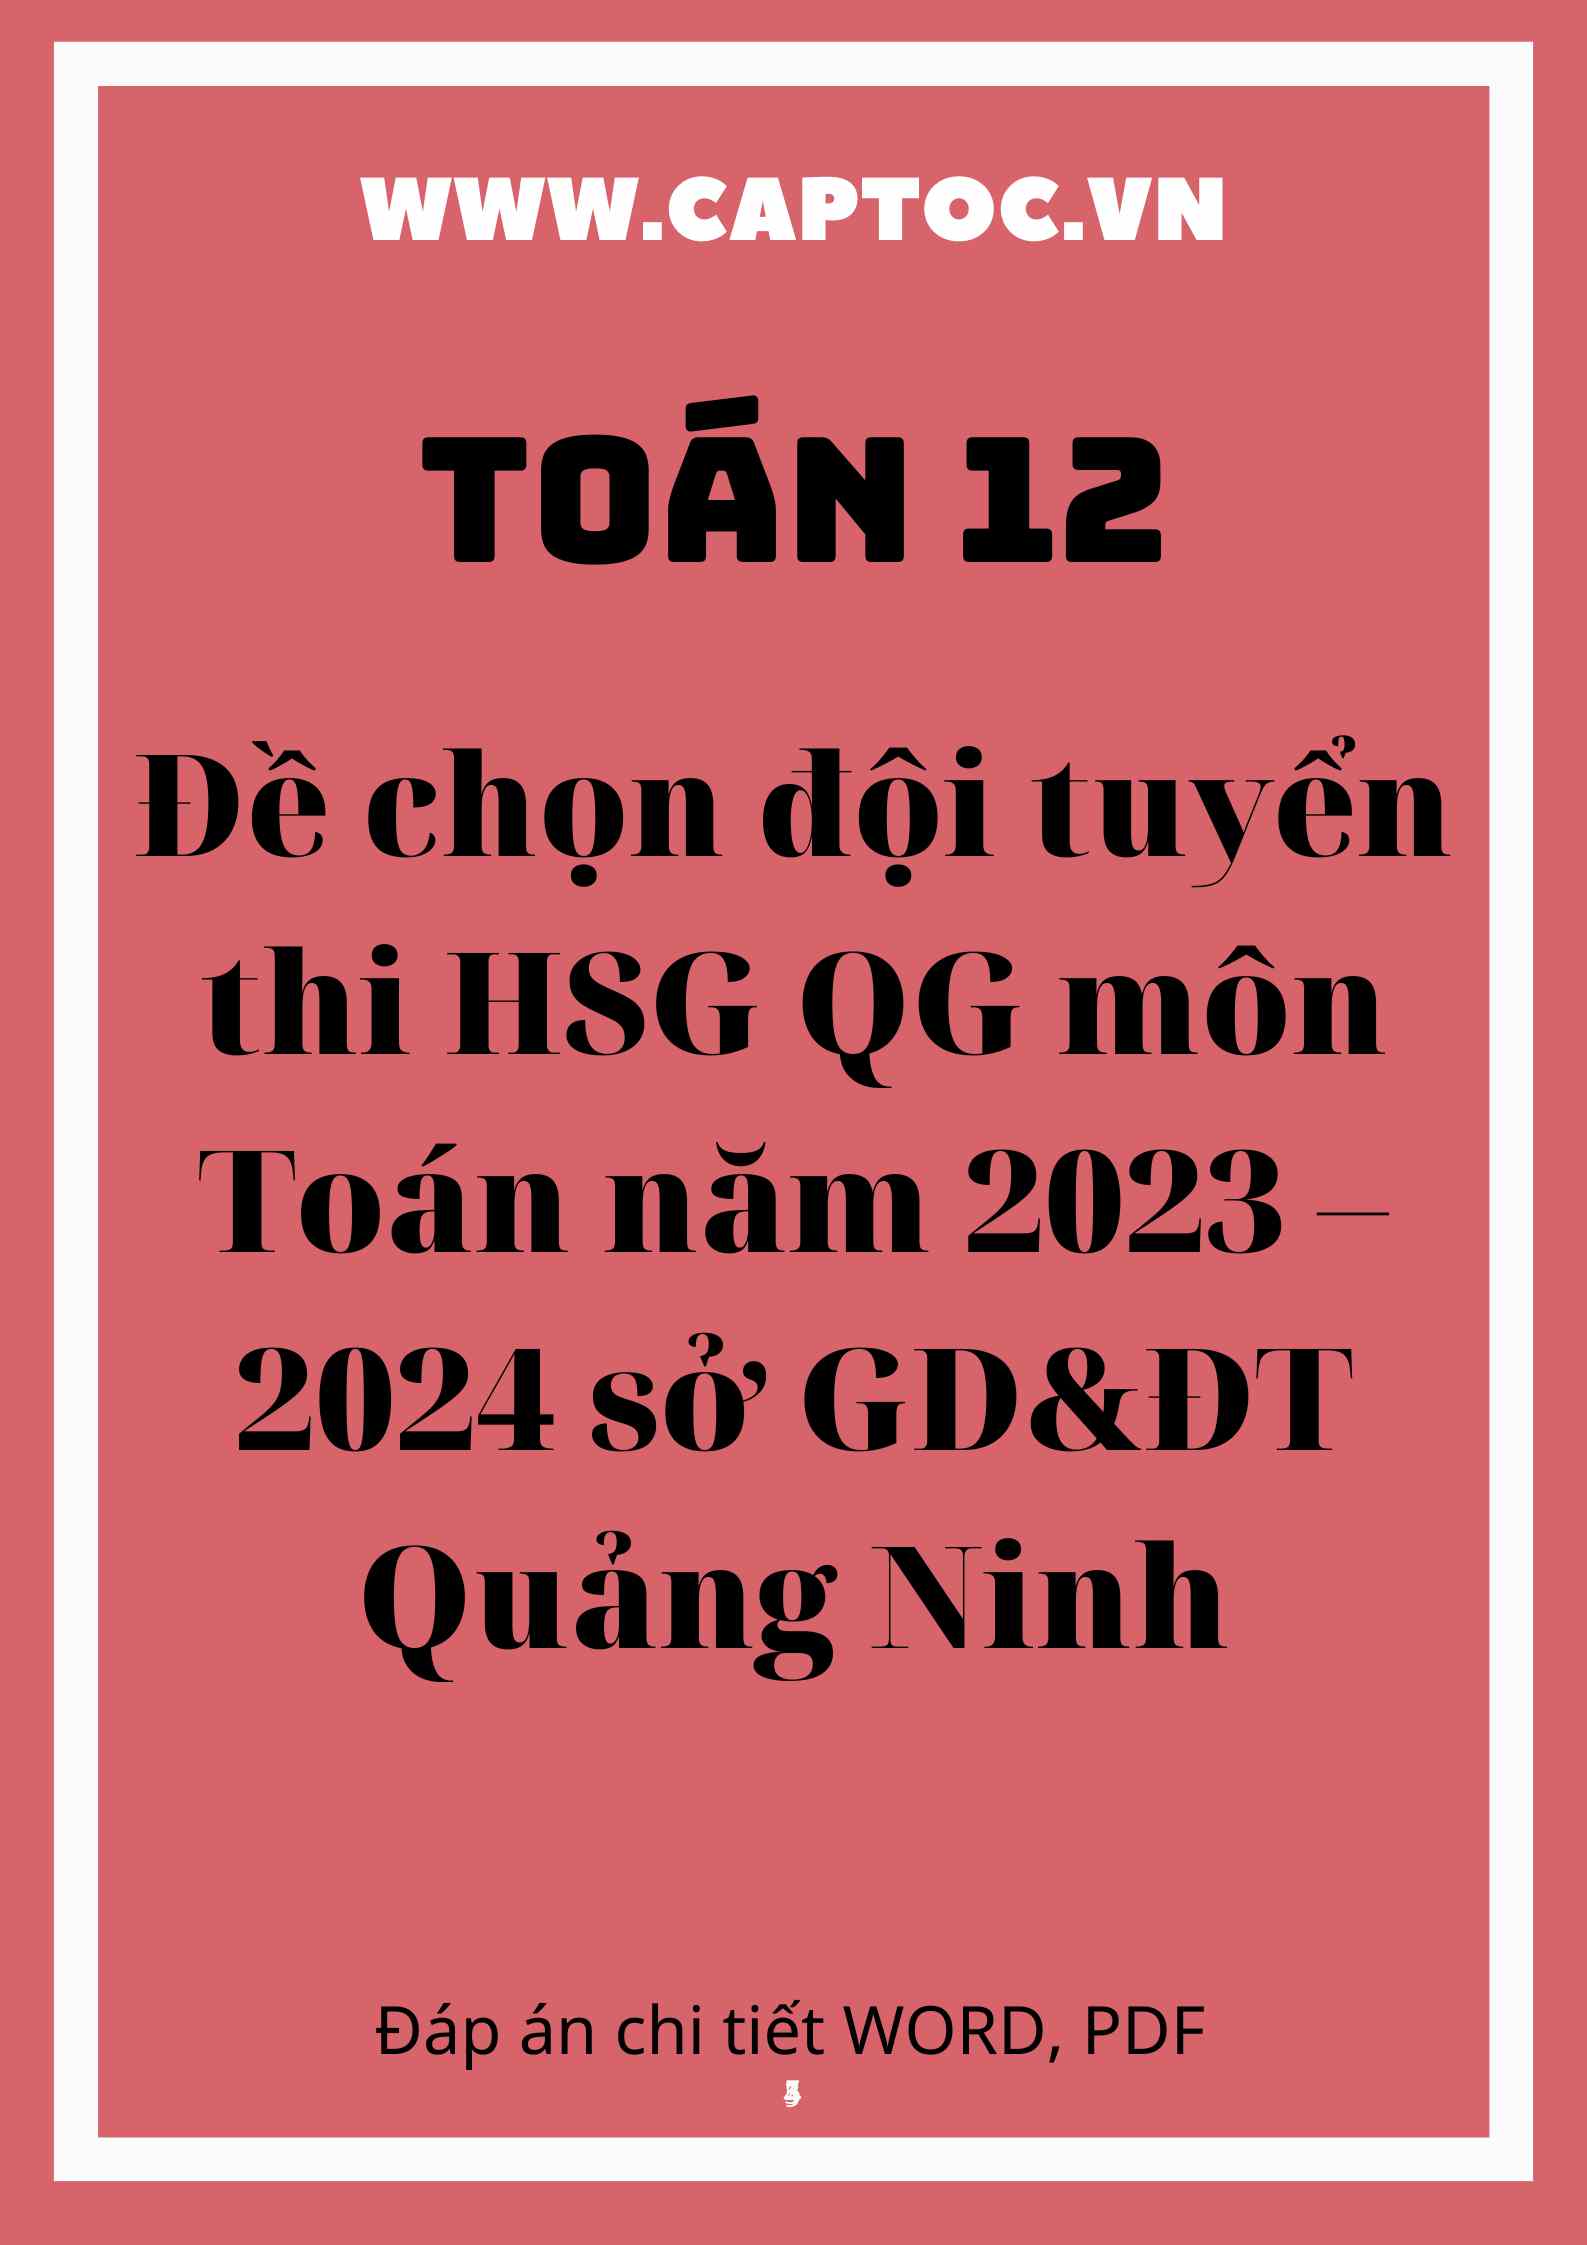 Đề chọn đội tuyển thi HSG QG môn Toán năm 2023 – 2024 sở GD&ĐT Quảng Ninh